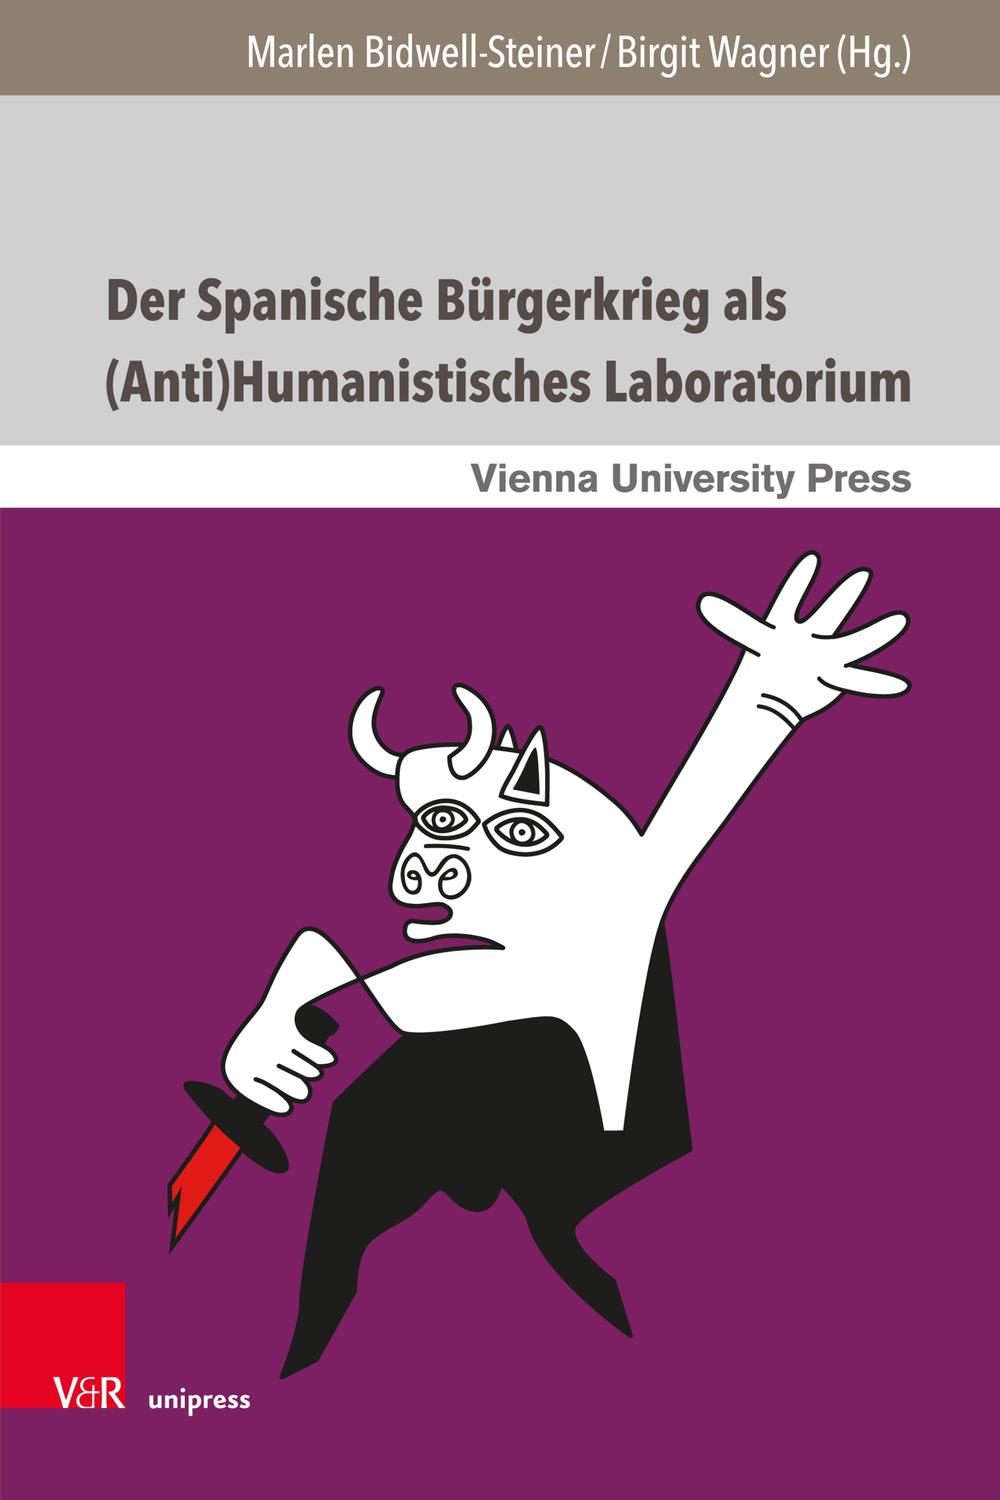 Der Spanische Bürgerkrieg als (Anti)Humanistisches Laboratorium - Marlen Bidwell-Steiner, Birgit Wagner